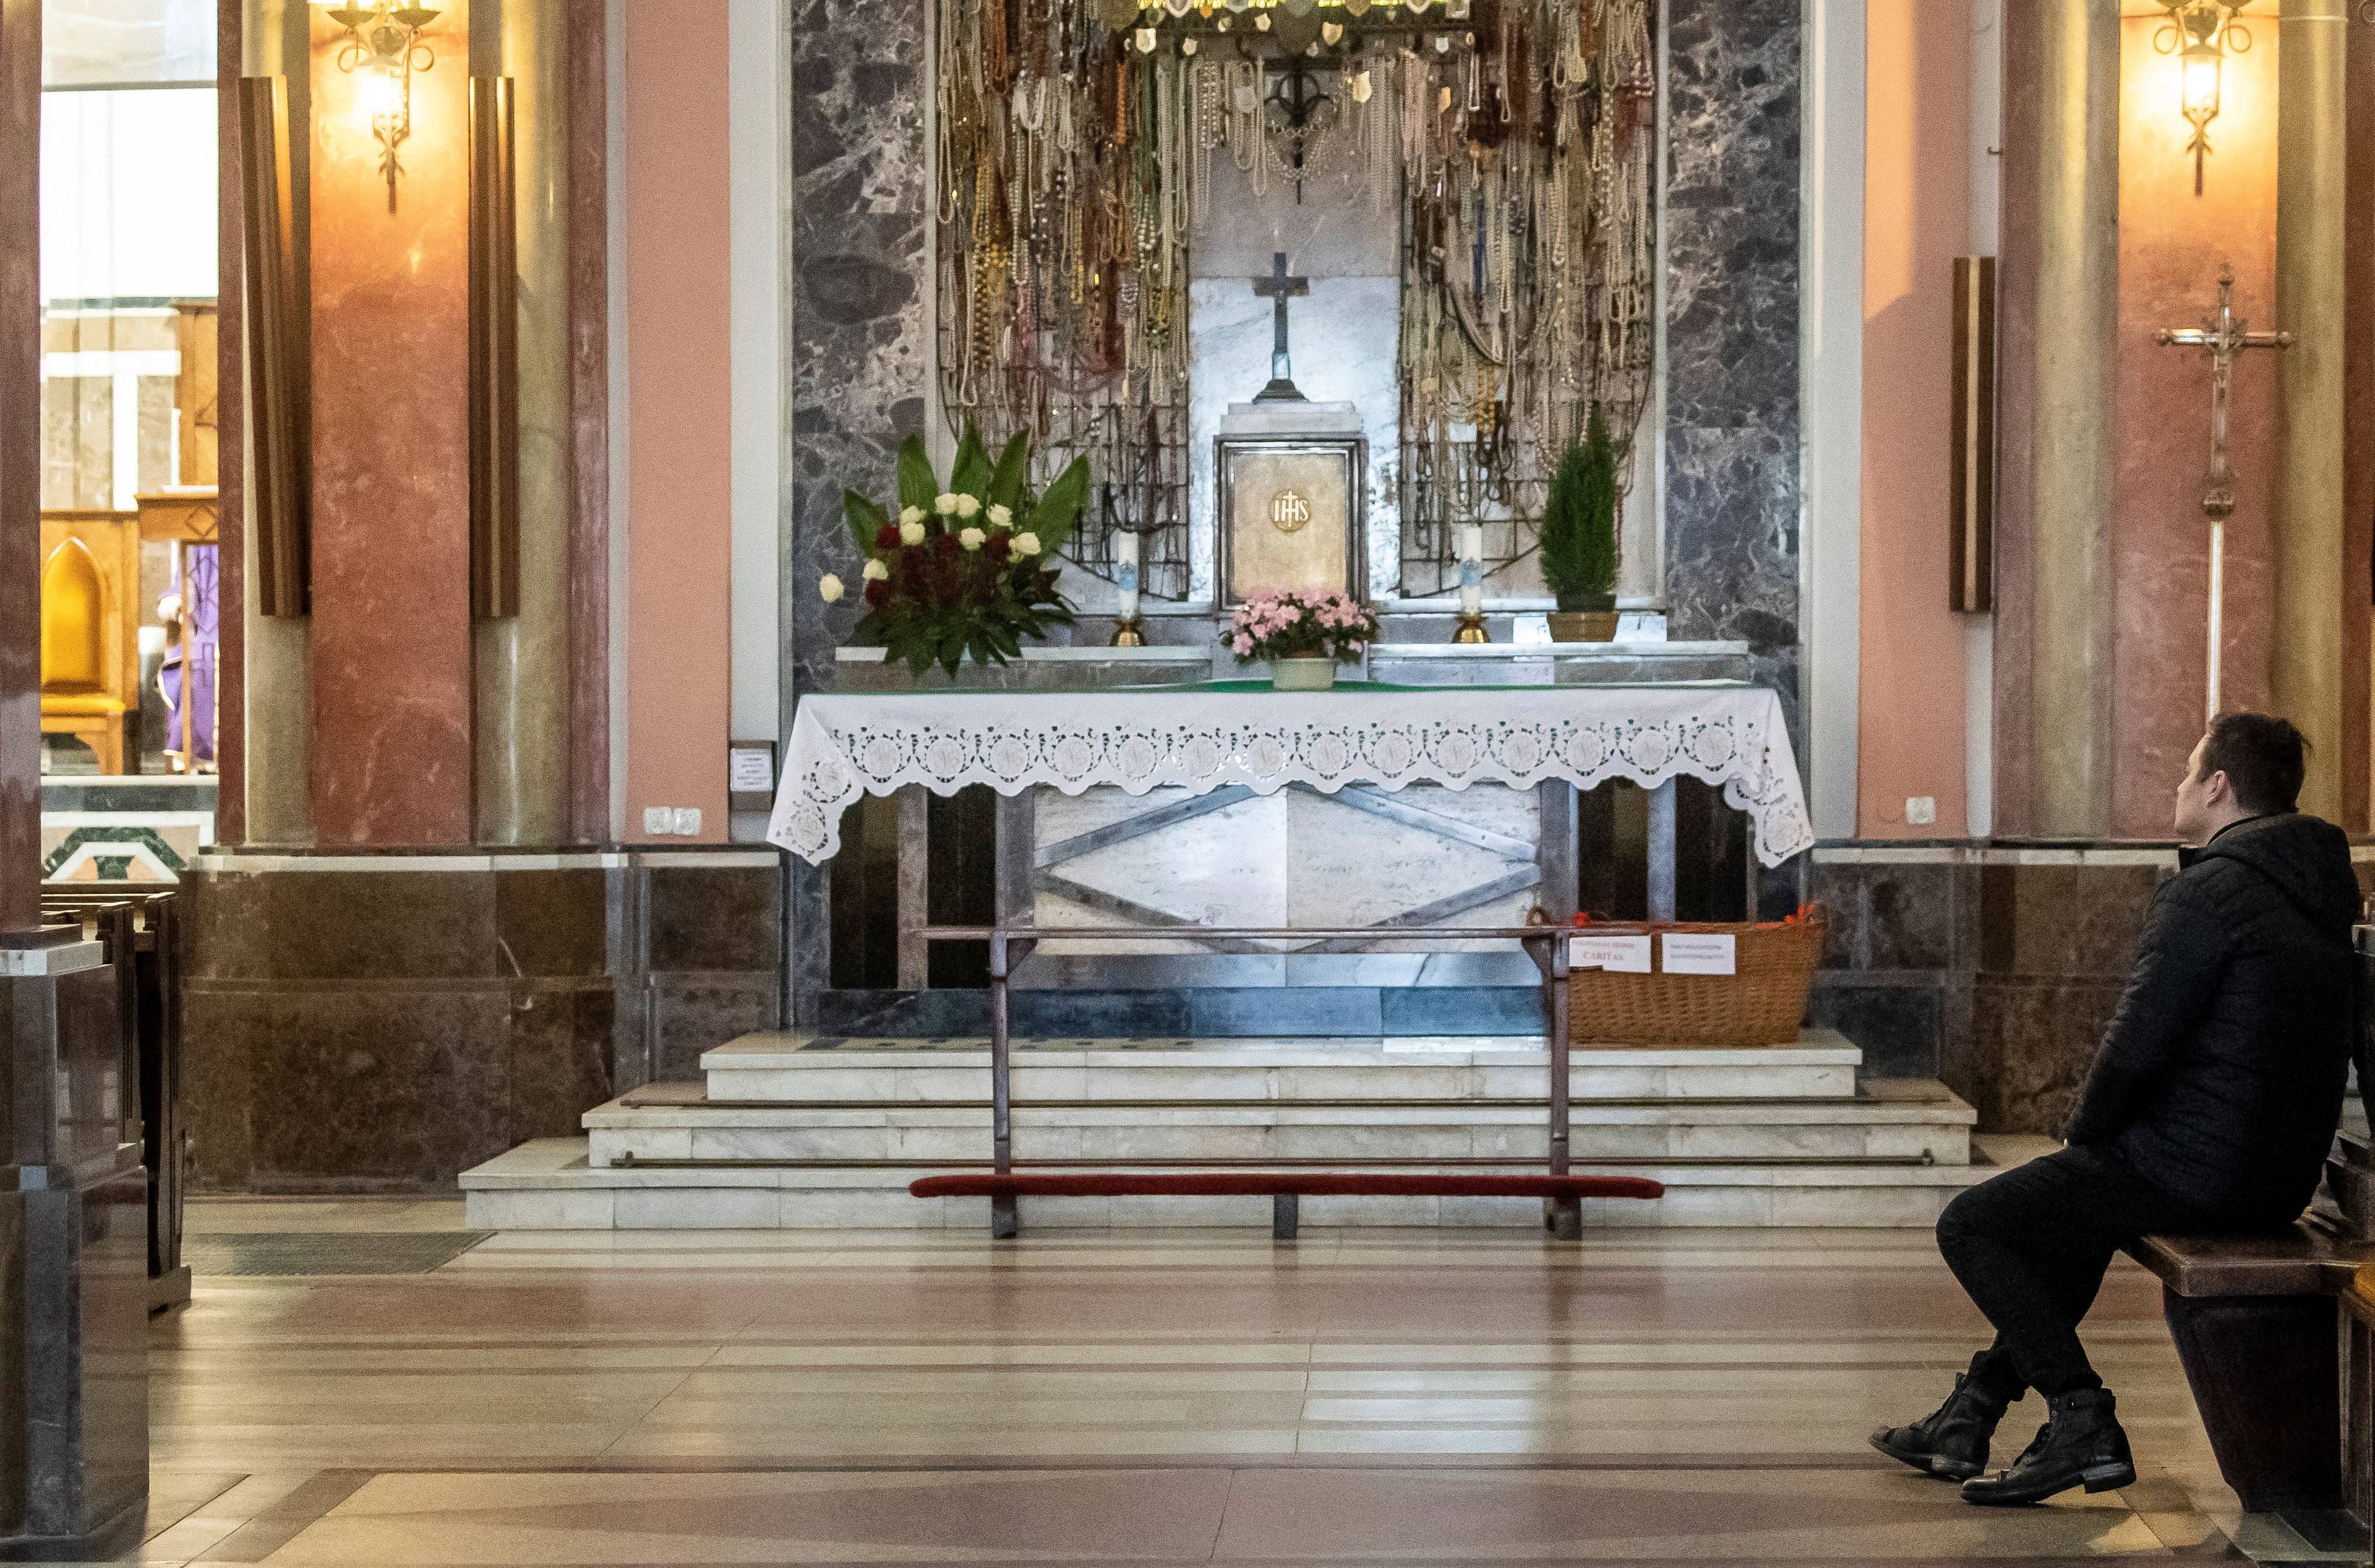 Pusta przestrzeń przed ołtarzem w kościele, z boku na ławce siedzi jeden mężczyzna